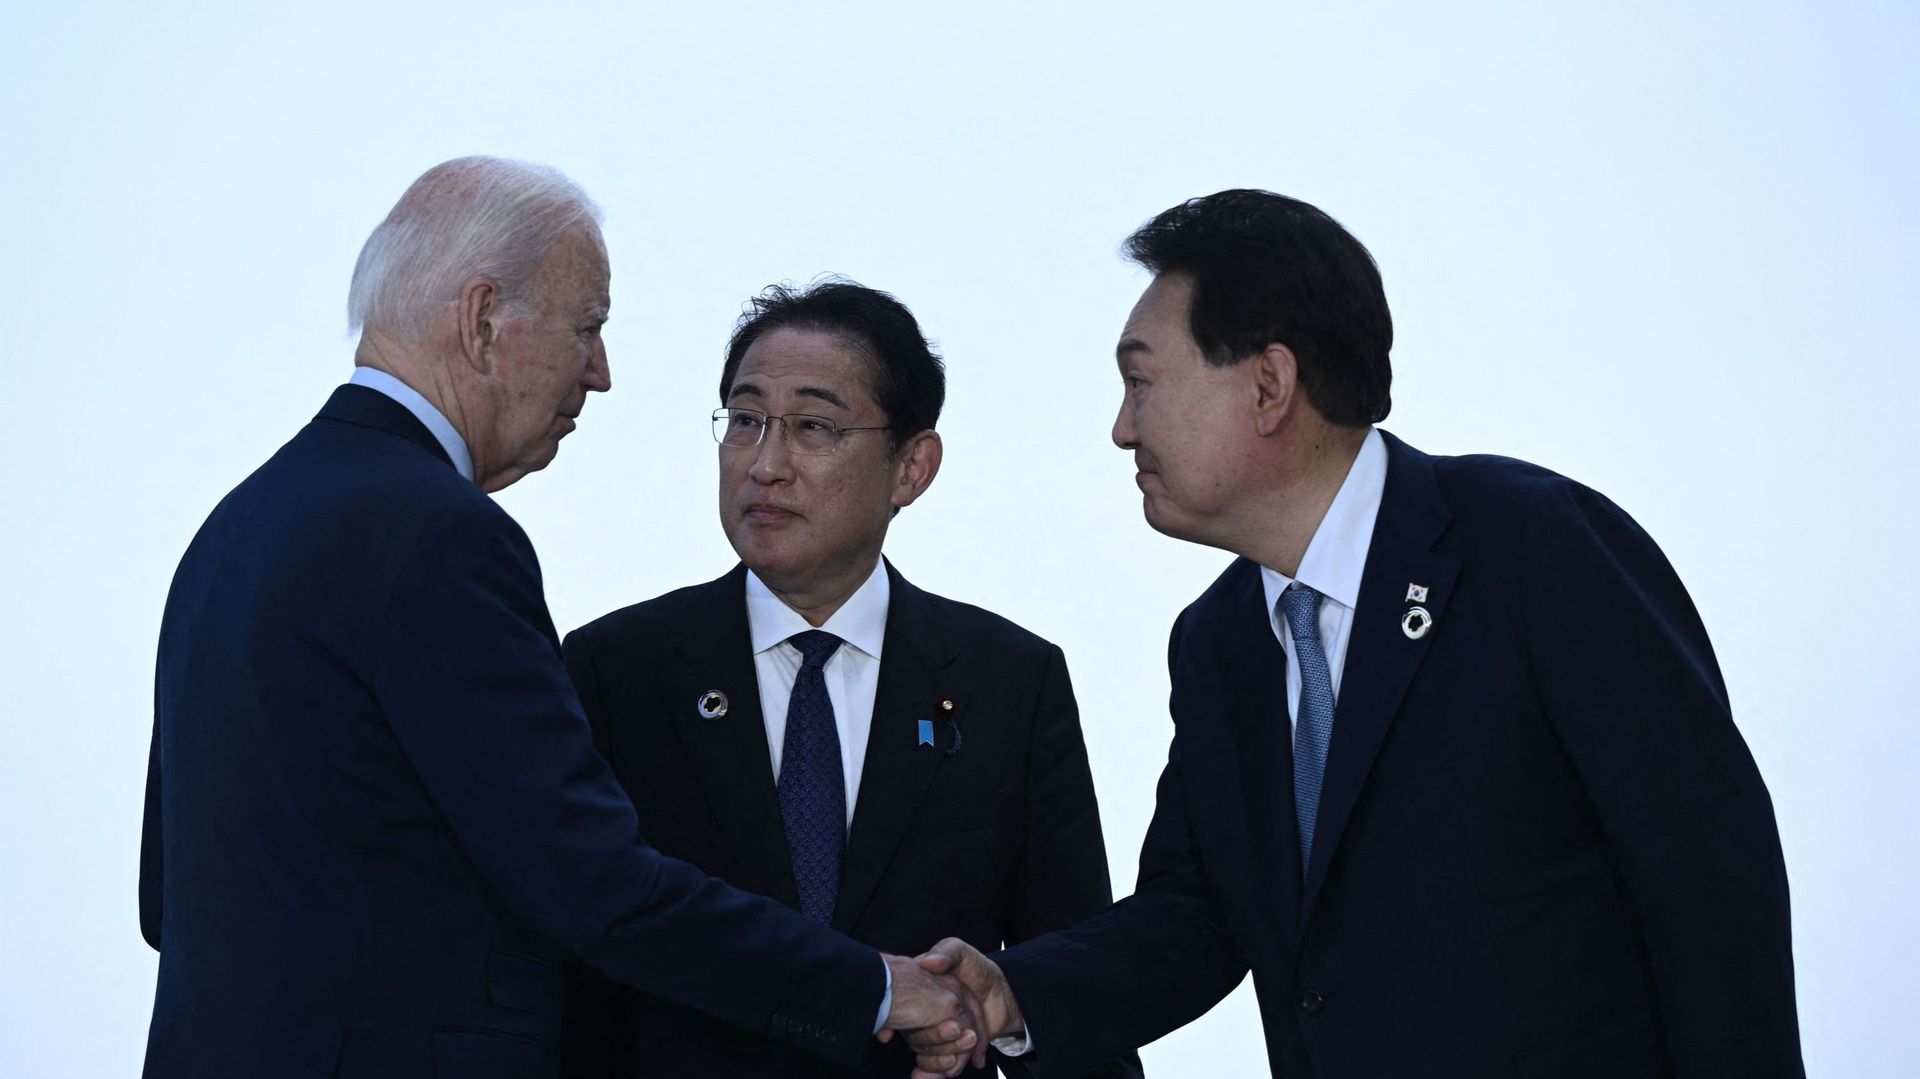 De gauche à droite : le président américain Joe Biden, le premier ministre japonais Fumio Kishida et le président sud-coréen Yoon Suk Yeol se saluent avant une réunion trilatérale lors du sommet des dirigeants du G7 à Hiroshima, le 21 mai 2023.